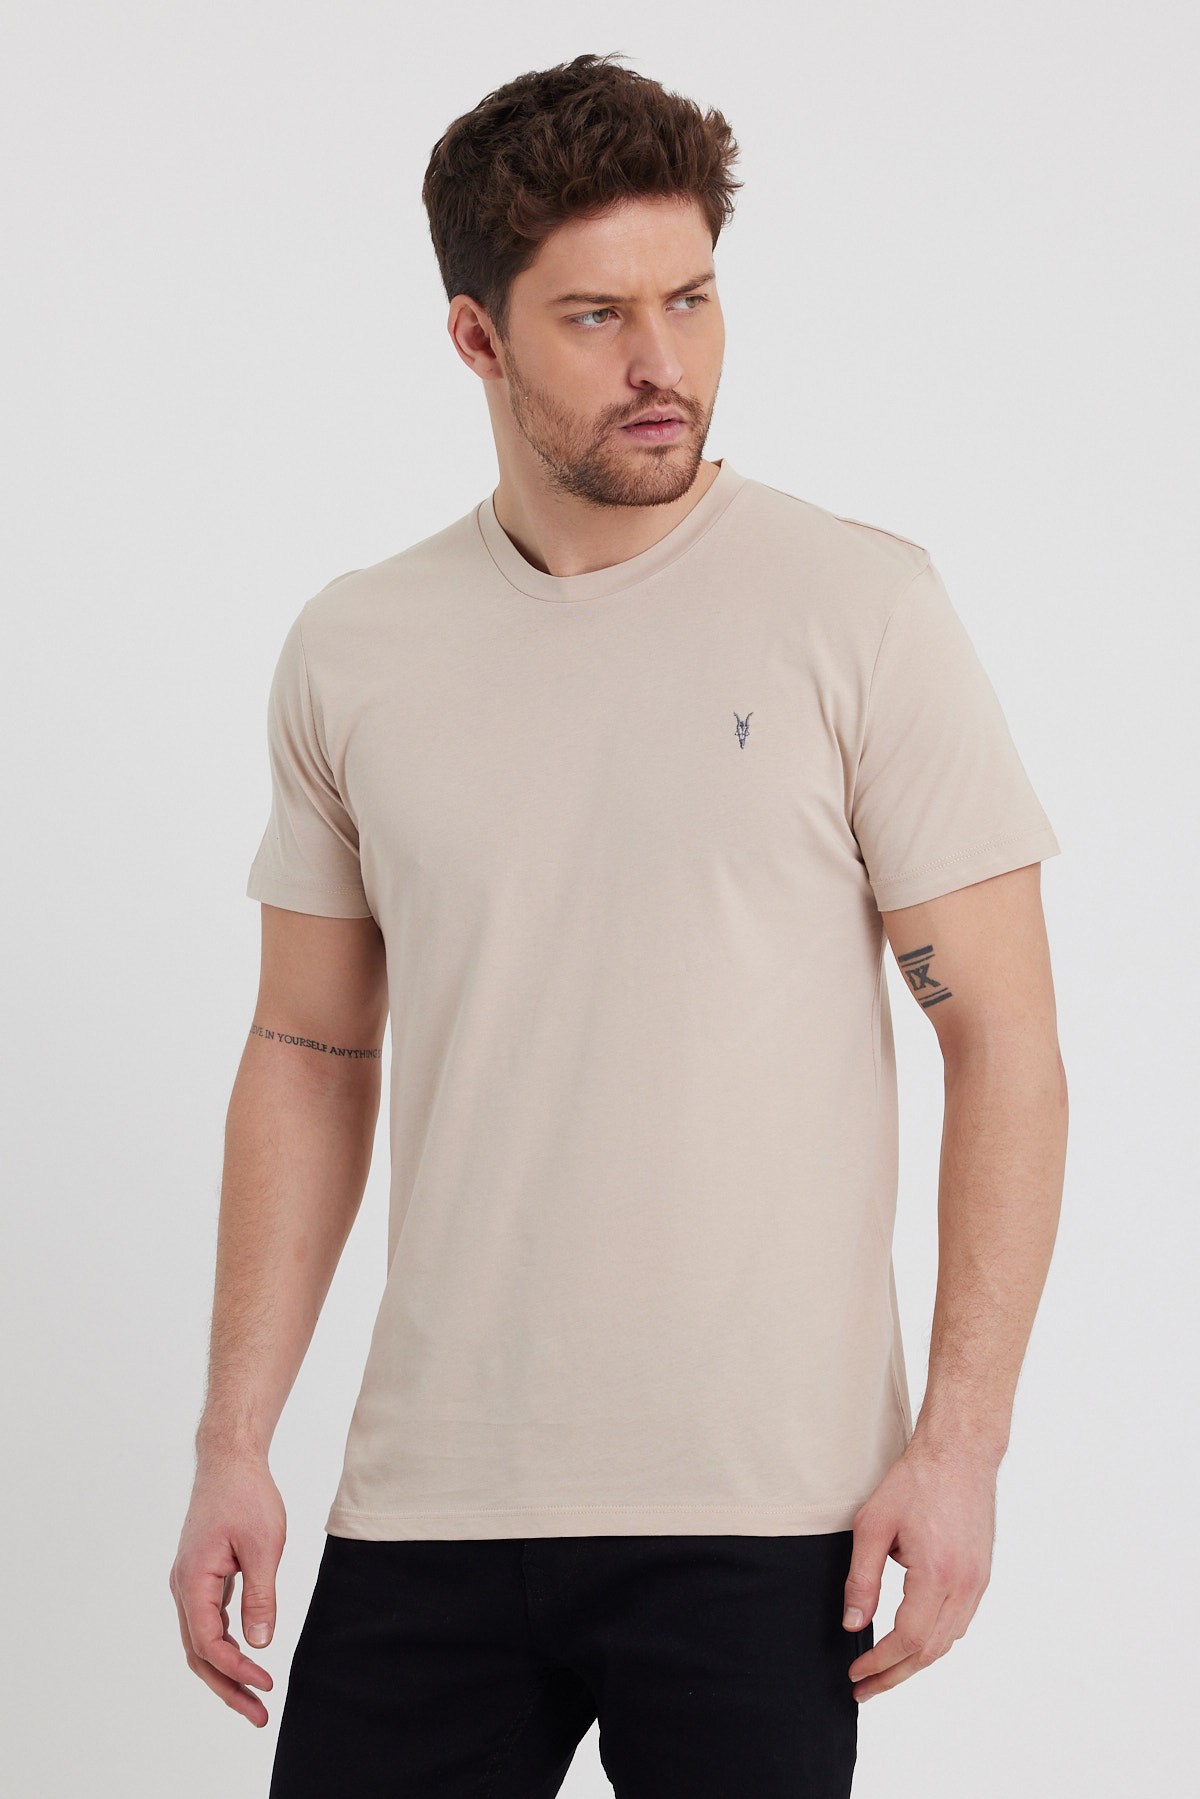 Erkek Bej Rengi T-Shirt Modelleri ve Fiyatları